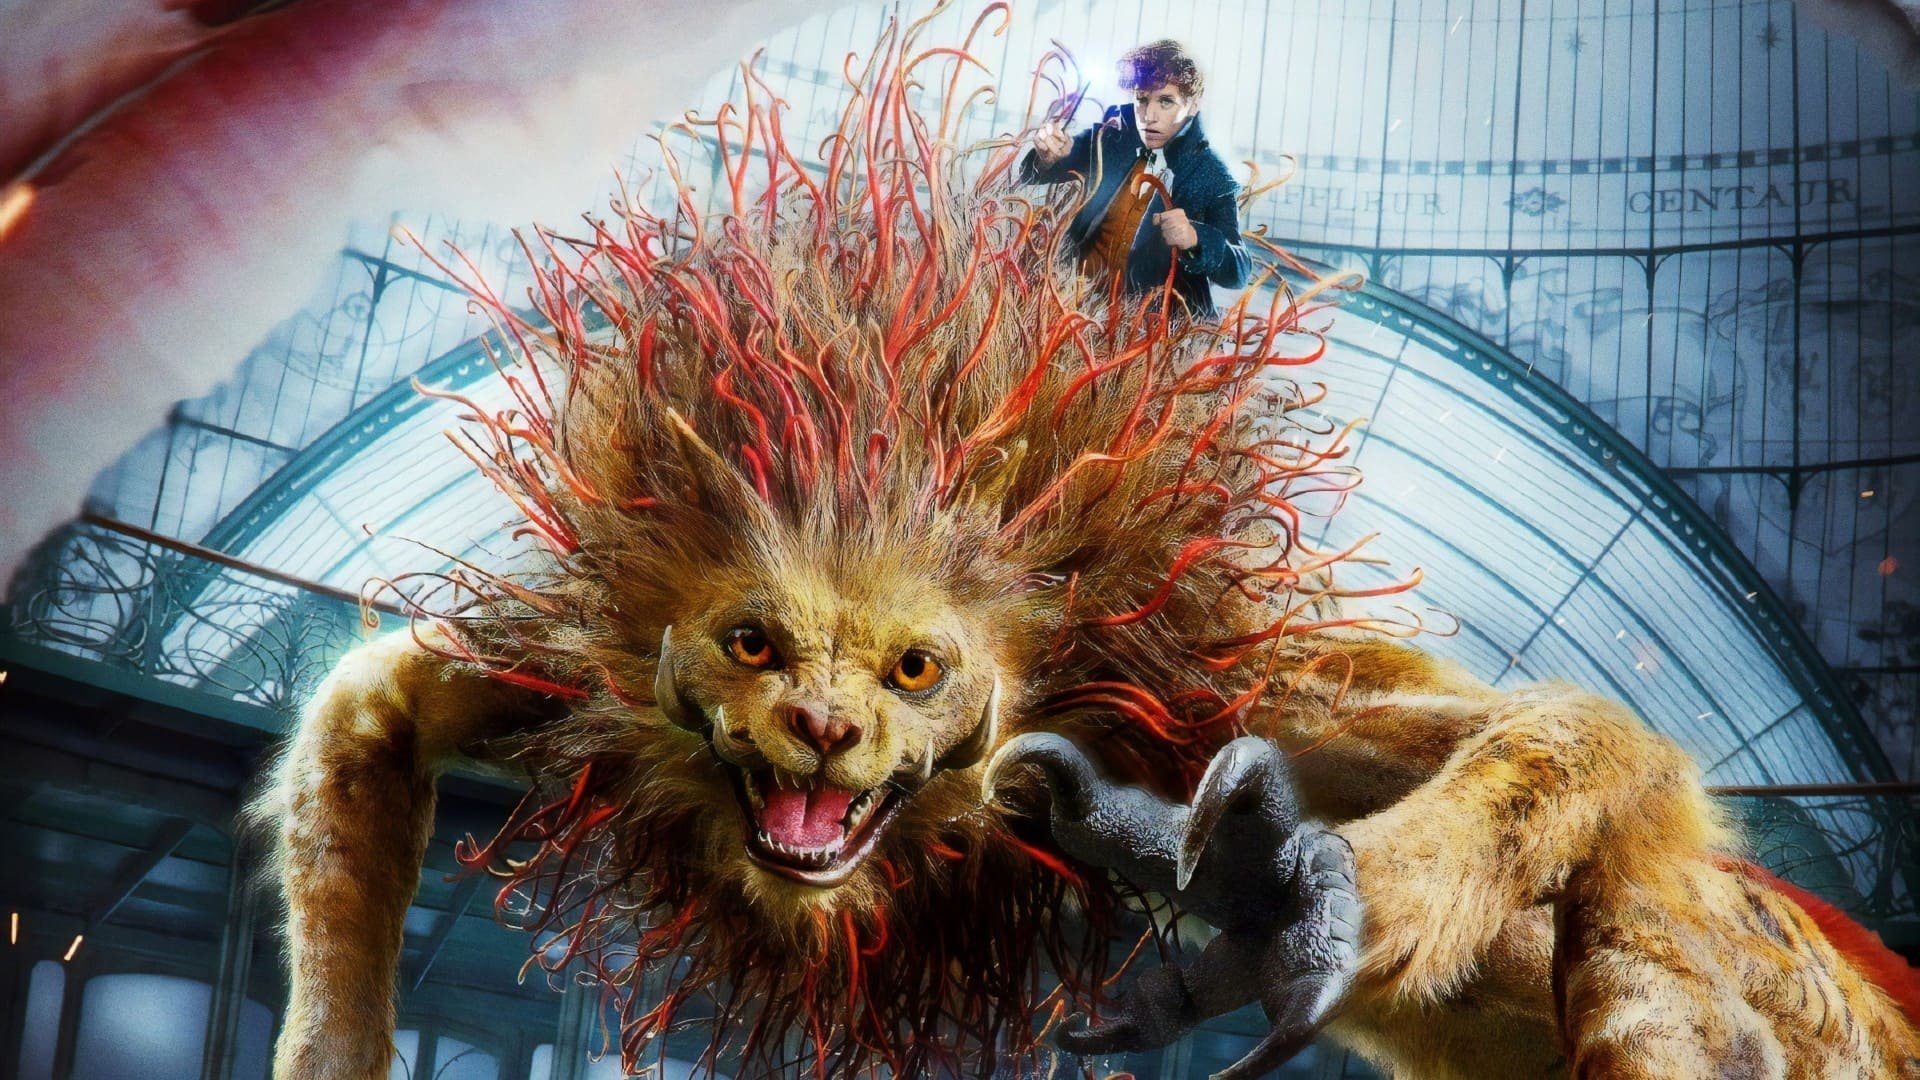 Fantastic Beasts The Crimes Of Grindelwald 4K 2018 big poster